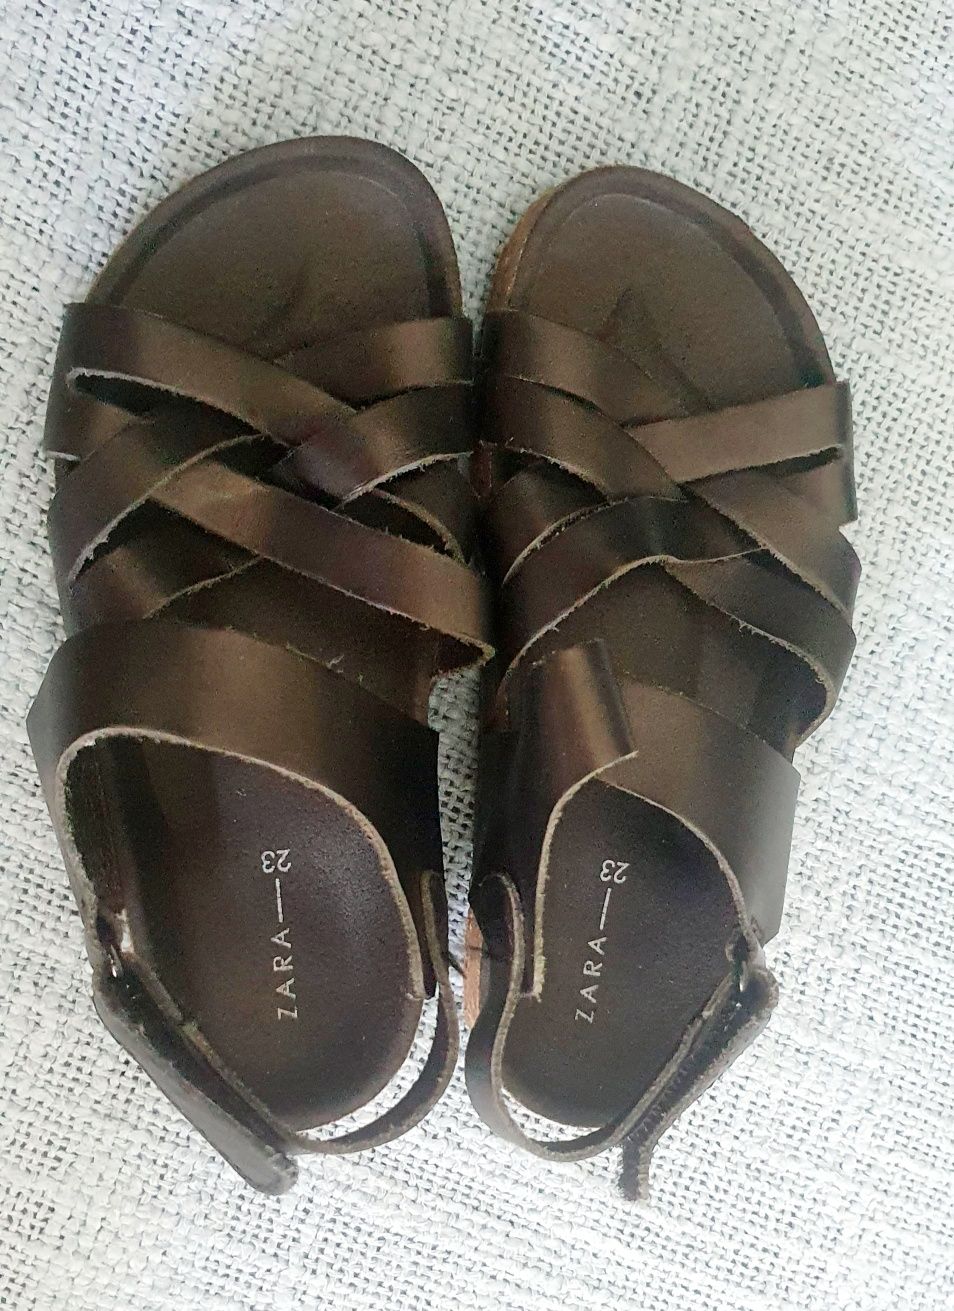 Sandałki, buty buciki skórzane Zara r.23, dł 14,5cm czarne